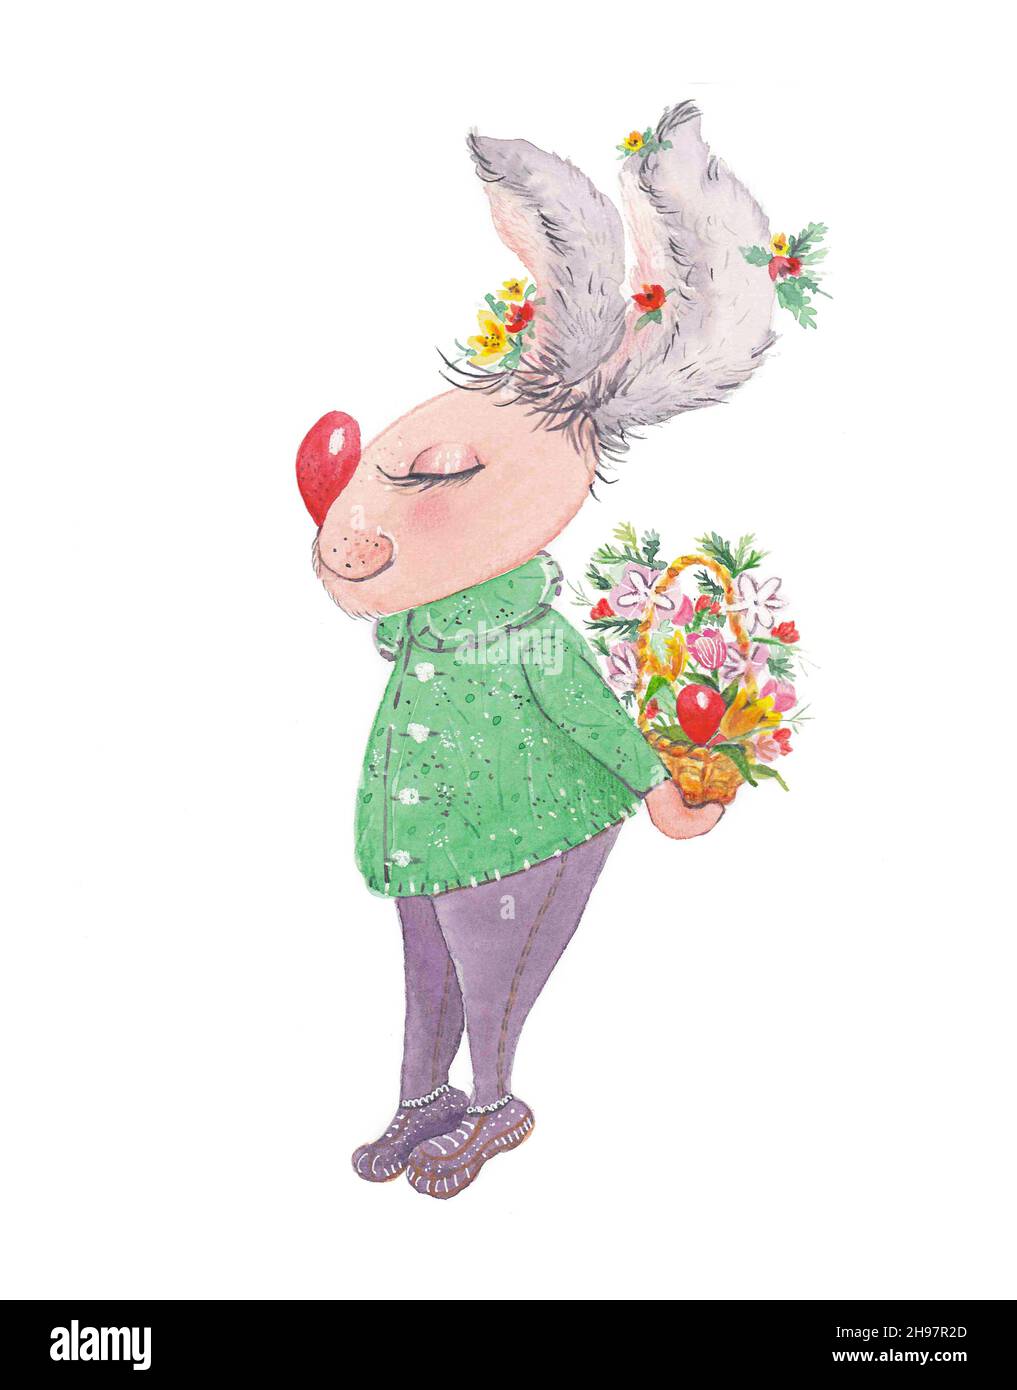 Acquerello del coniglio di Pasqua. Un coniglio tiene un cesto con fiori e uova di Pasqua dietro uno spip Foto Stock